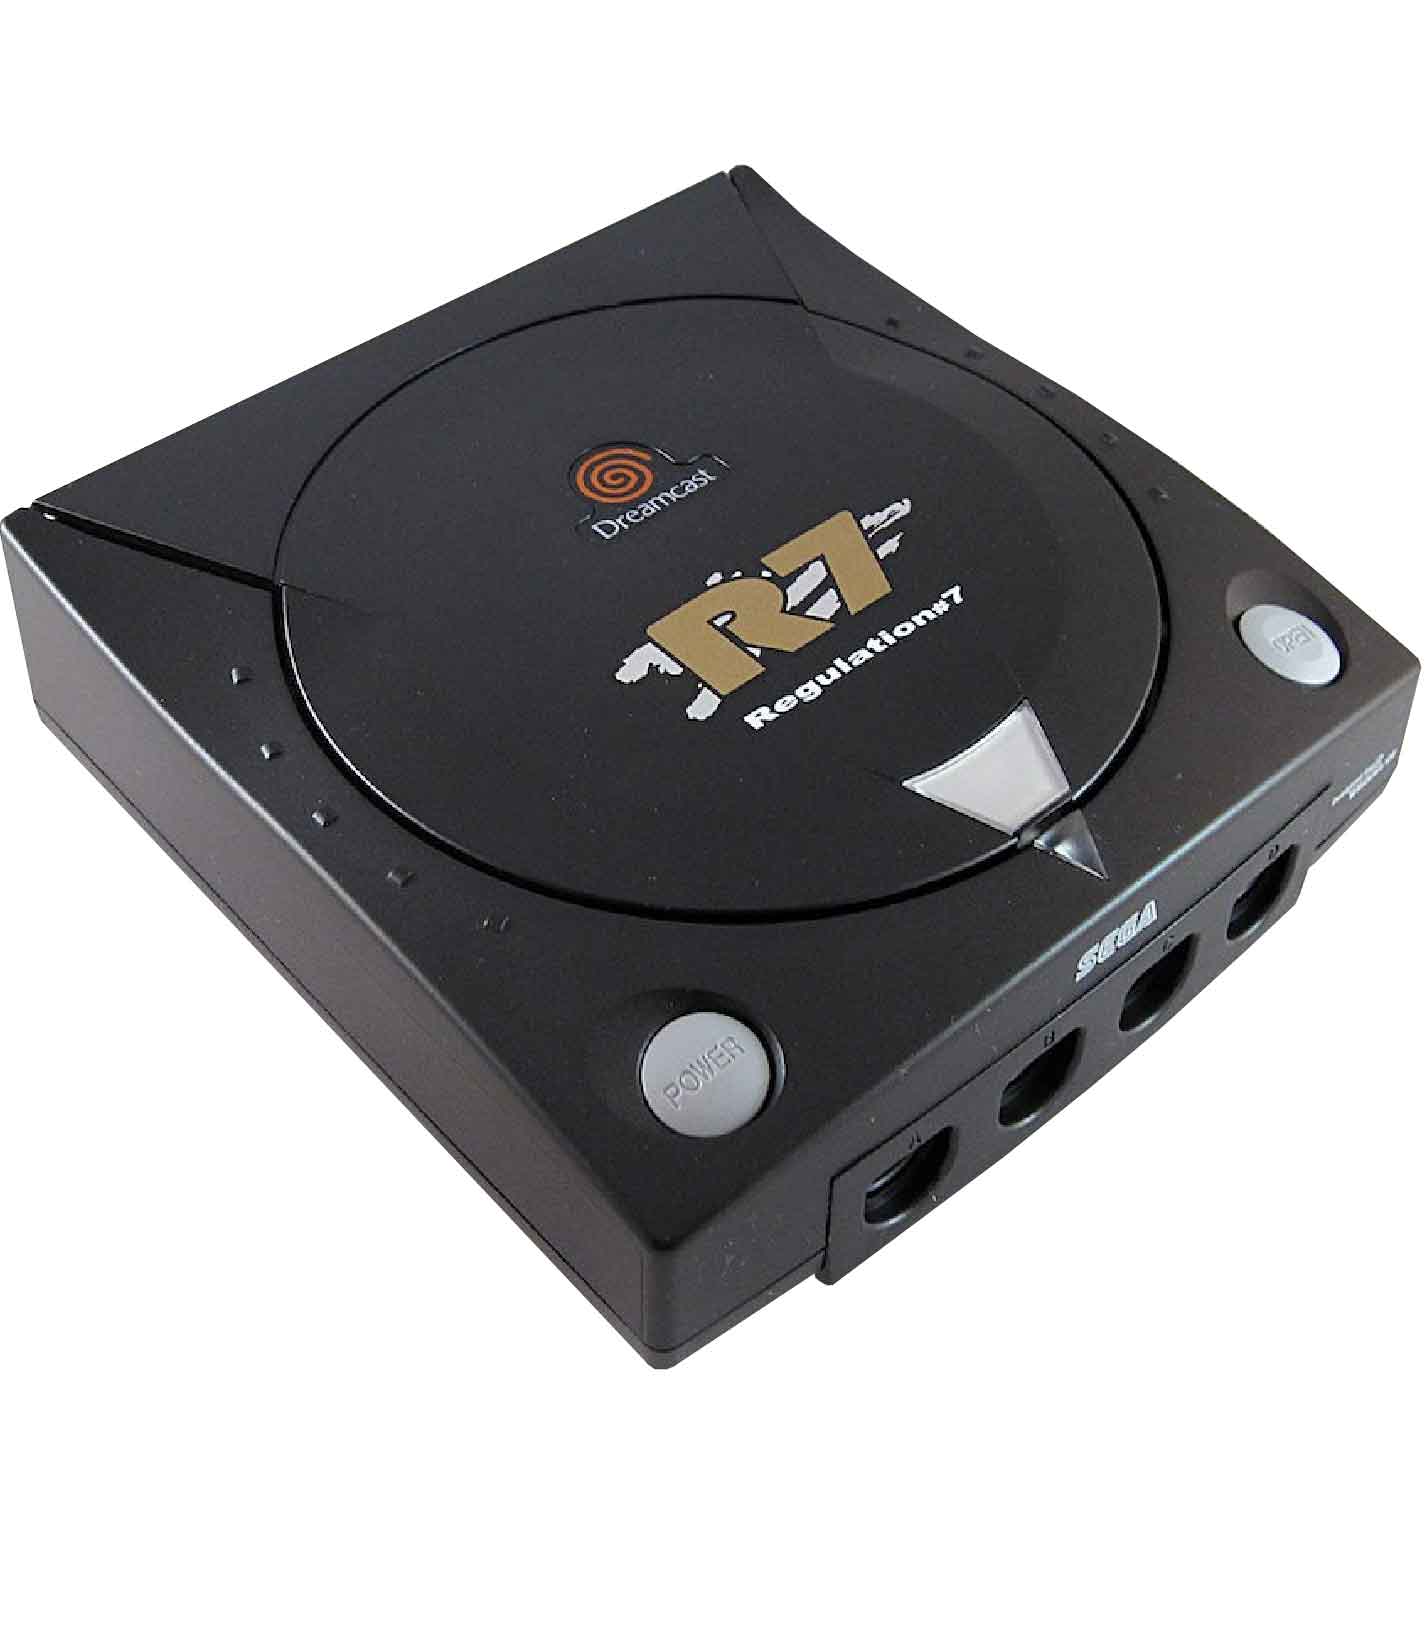 Sega Dreamcast Regulation 7 R7 Retropixl retrogaming Limited Edition